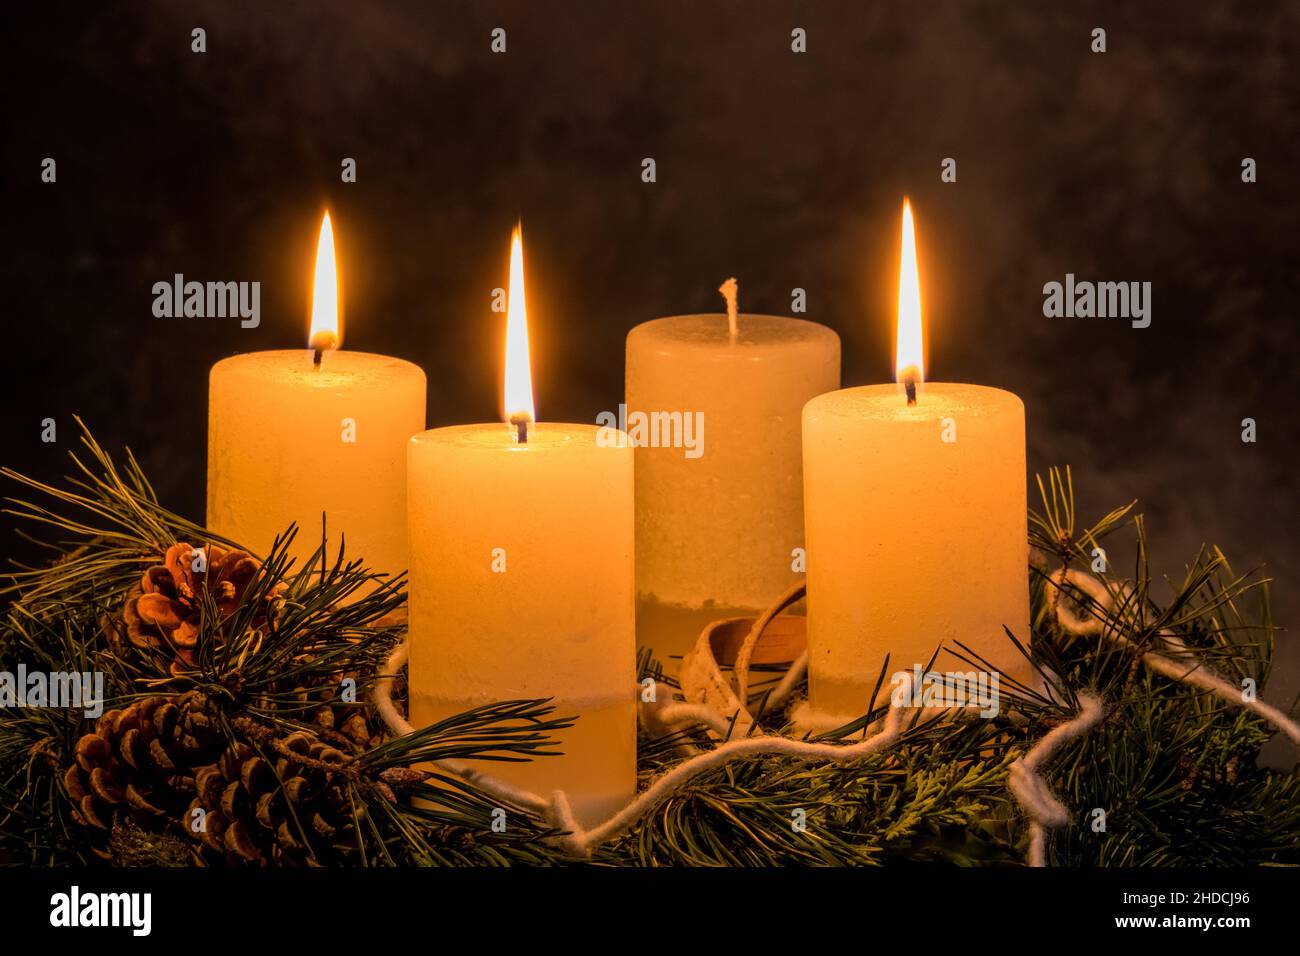 Ein Adventskranz zu Weihnachten sorgt für romatinsche Stimmung in der stillen Advent Zeit, 3. Advent, drei brennende Kerzen, Stock Photo